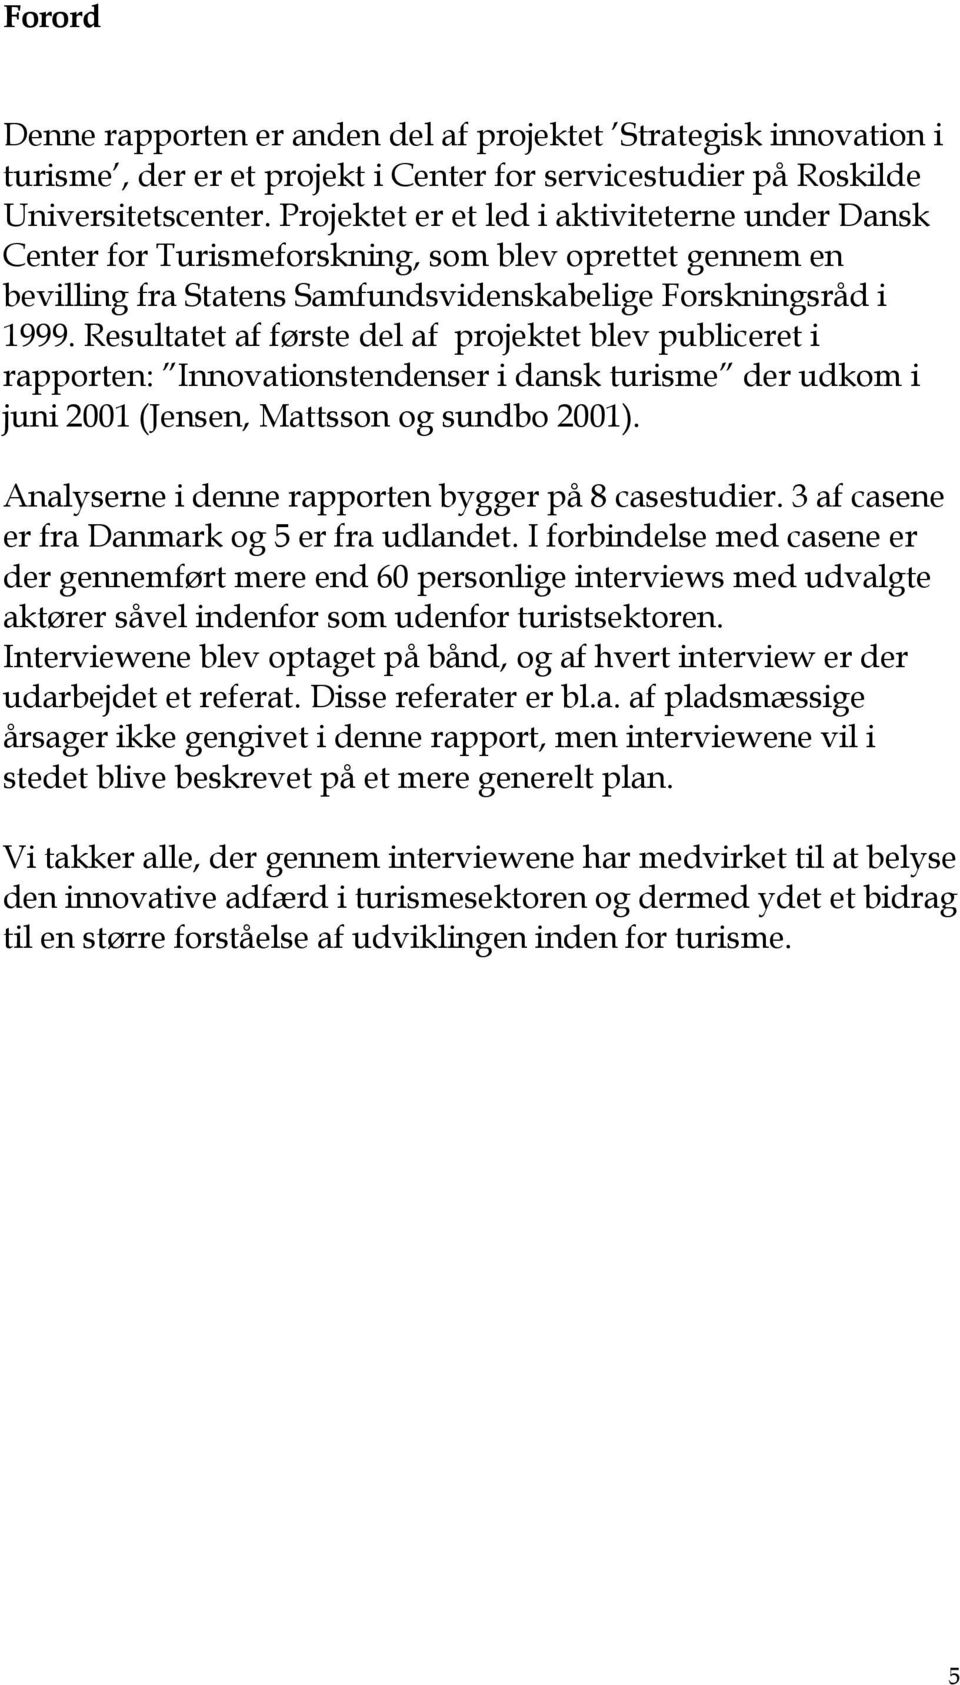 Resultatet af første del af projektet blev publiceret i rapporten: Innovationstendenser i dansk turisme der udkom i juni 2001 (Jensen, Mattsson og sundbo 2001).